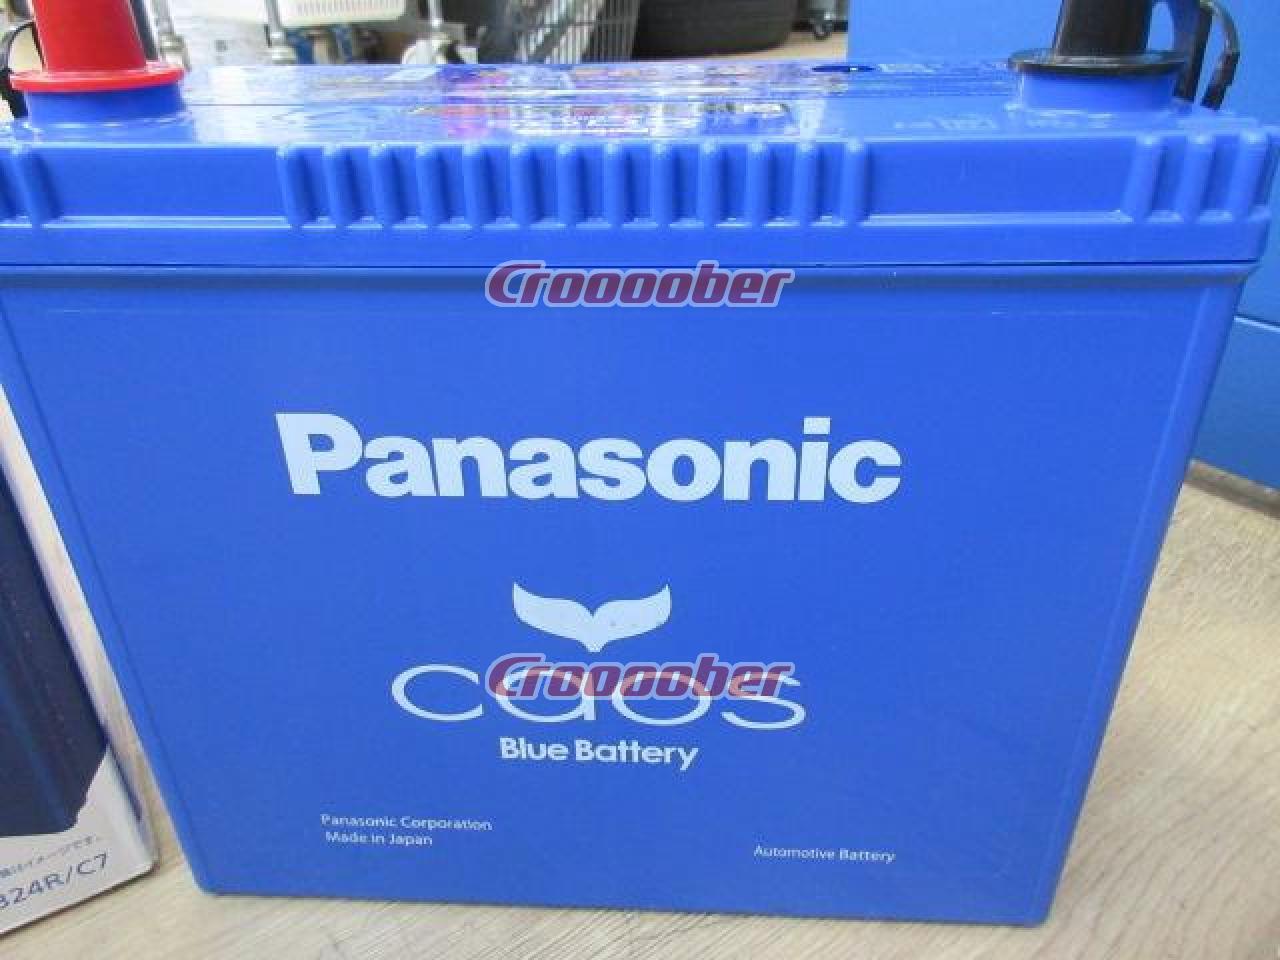 Panasonic Caos Blue Battery 80B24R | Batteries | Croooober